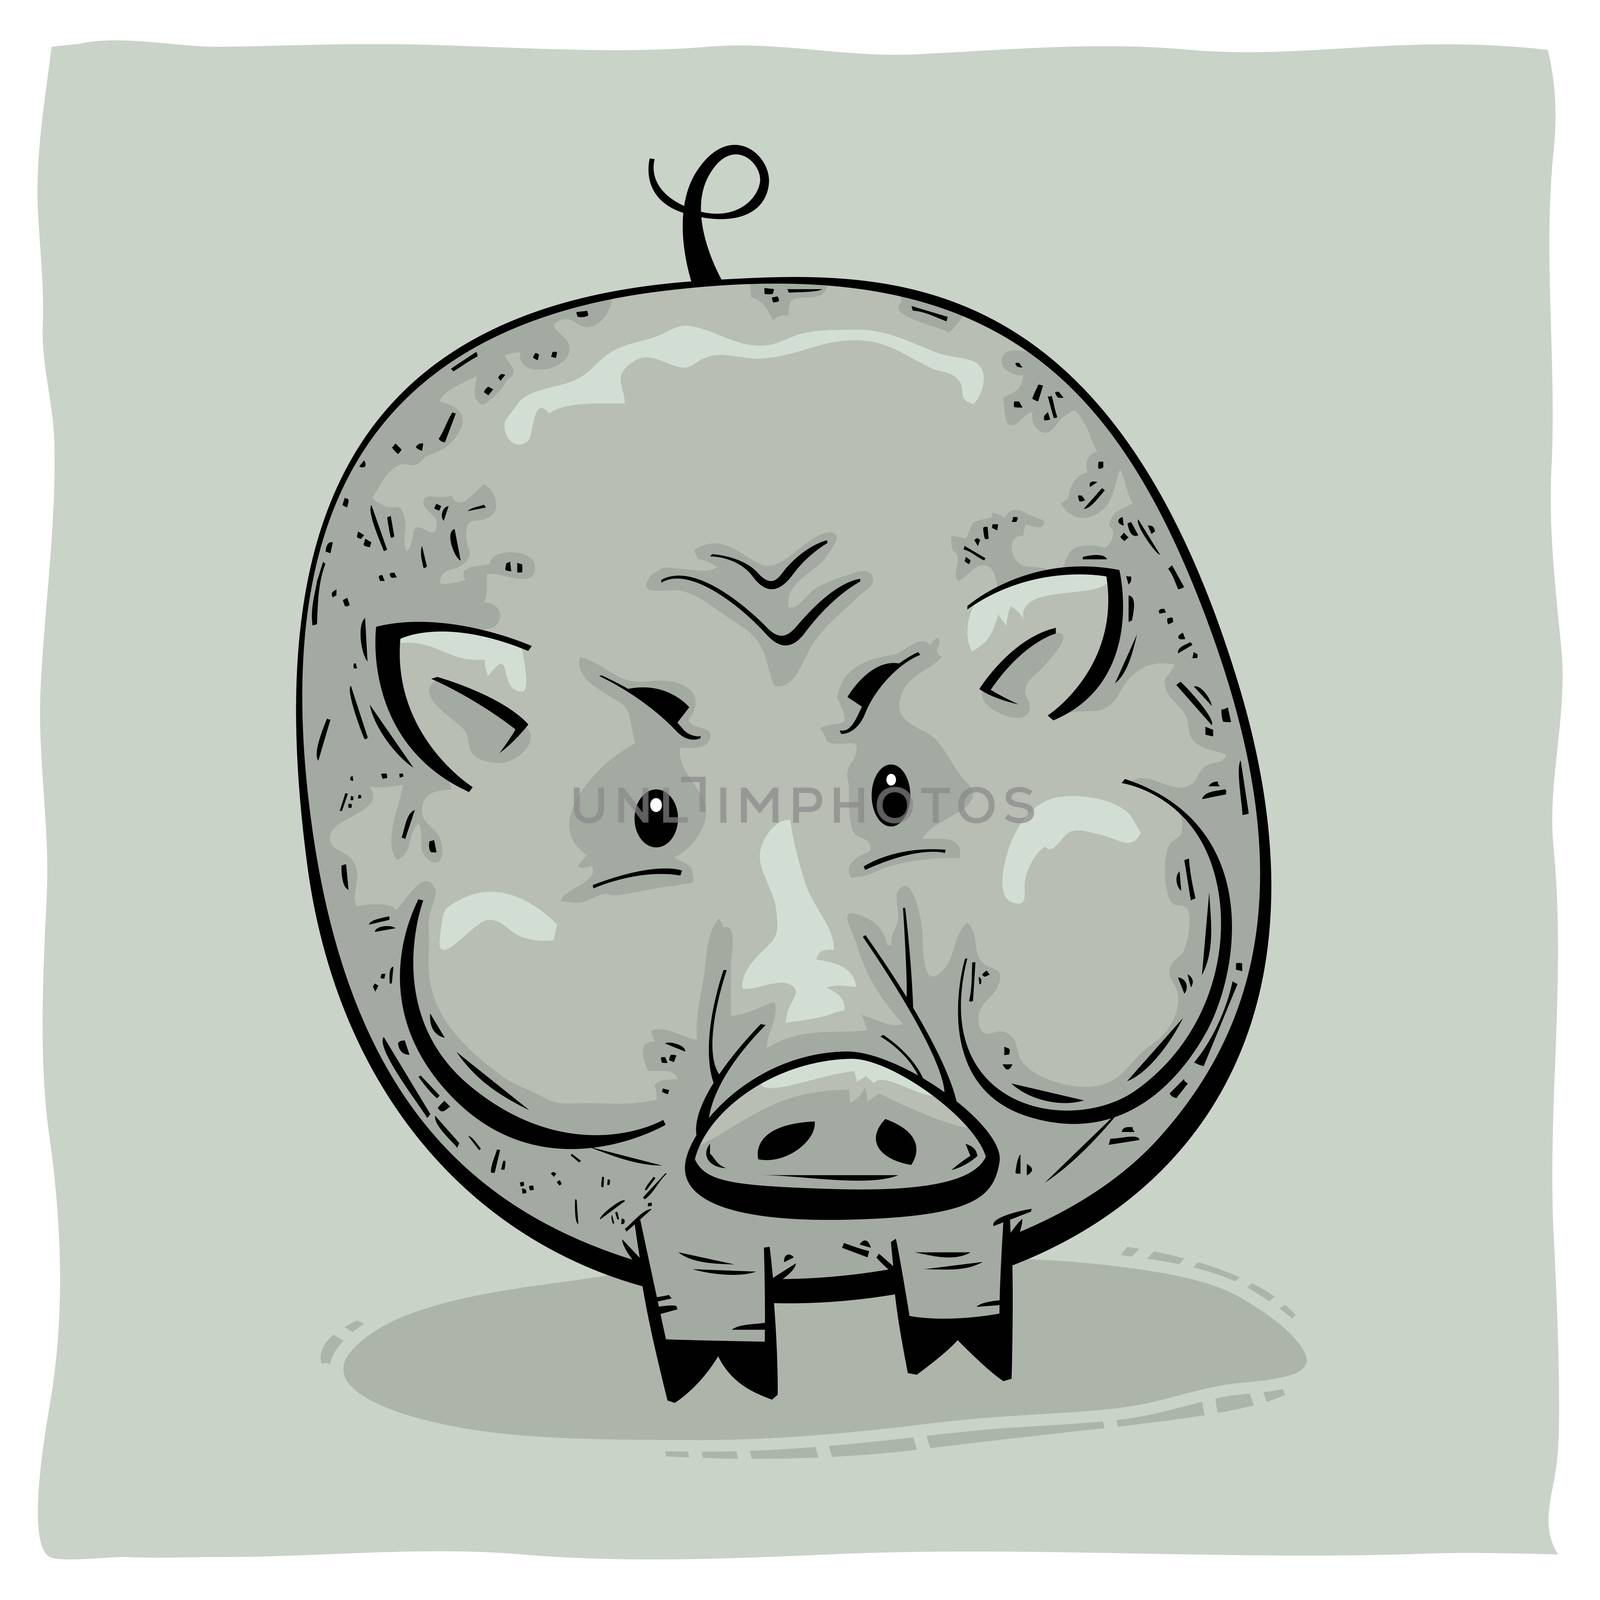 Fat round pig vector illustration cartoon